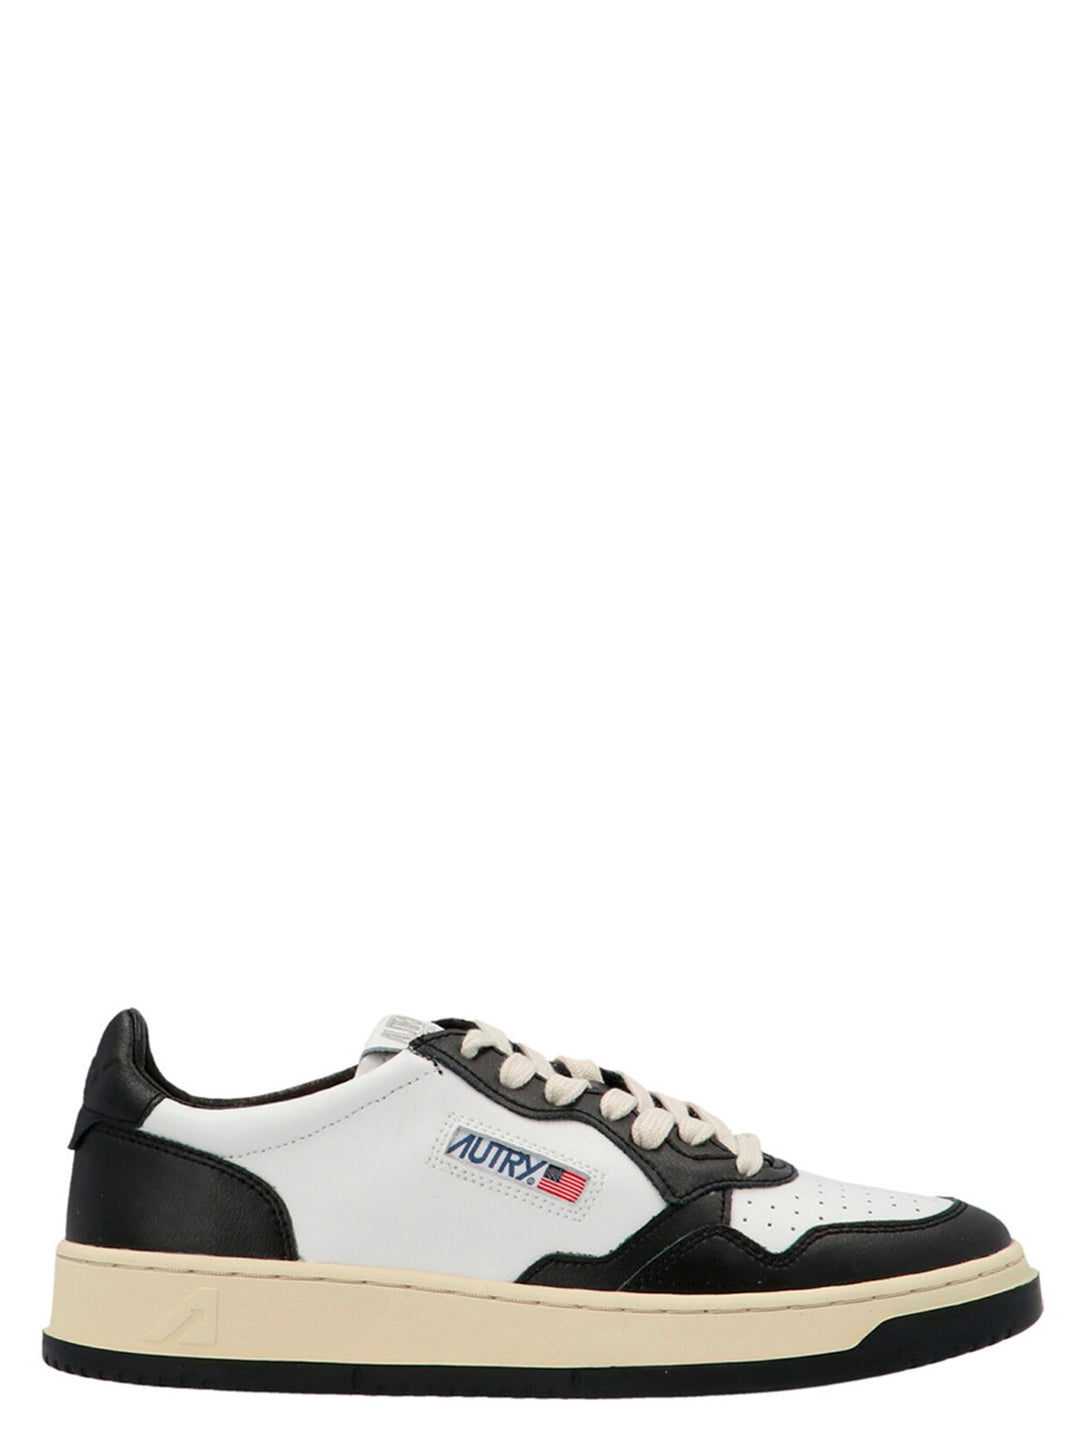 Autry 01 Sneakers Bianco/Nero